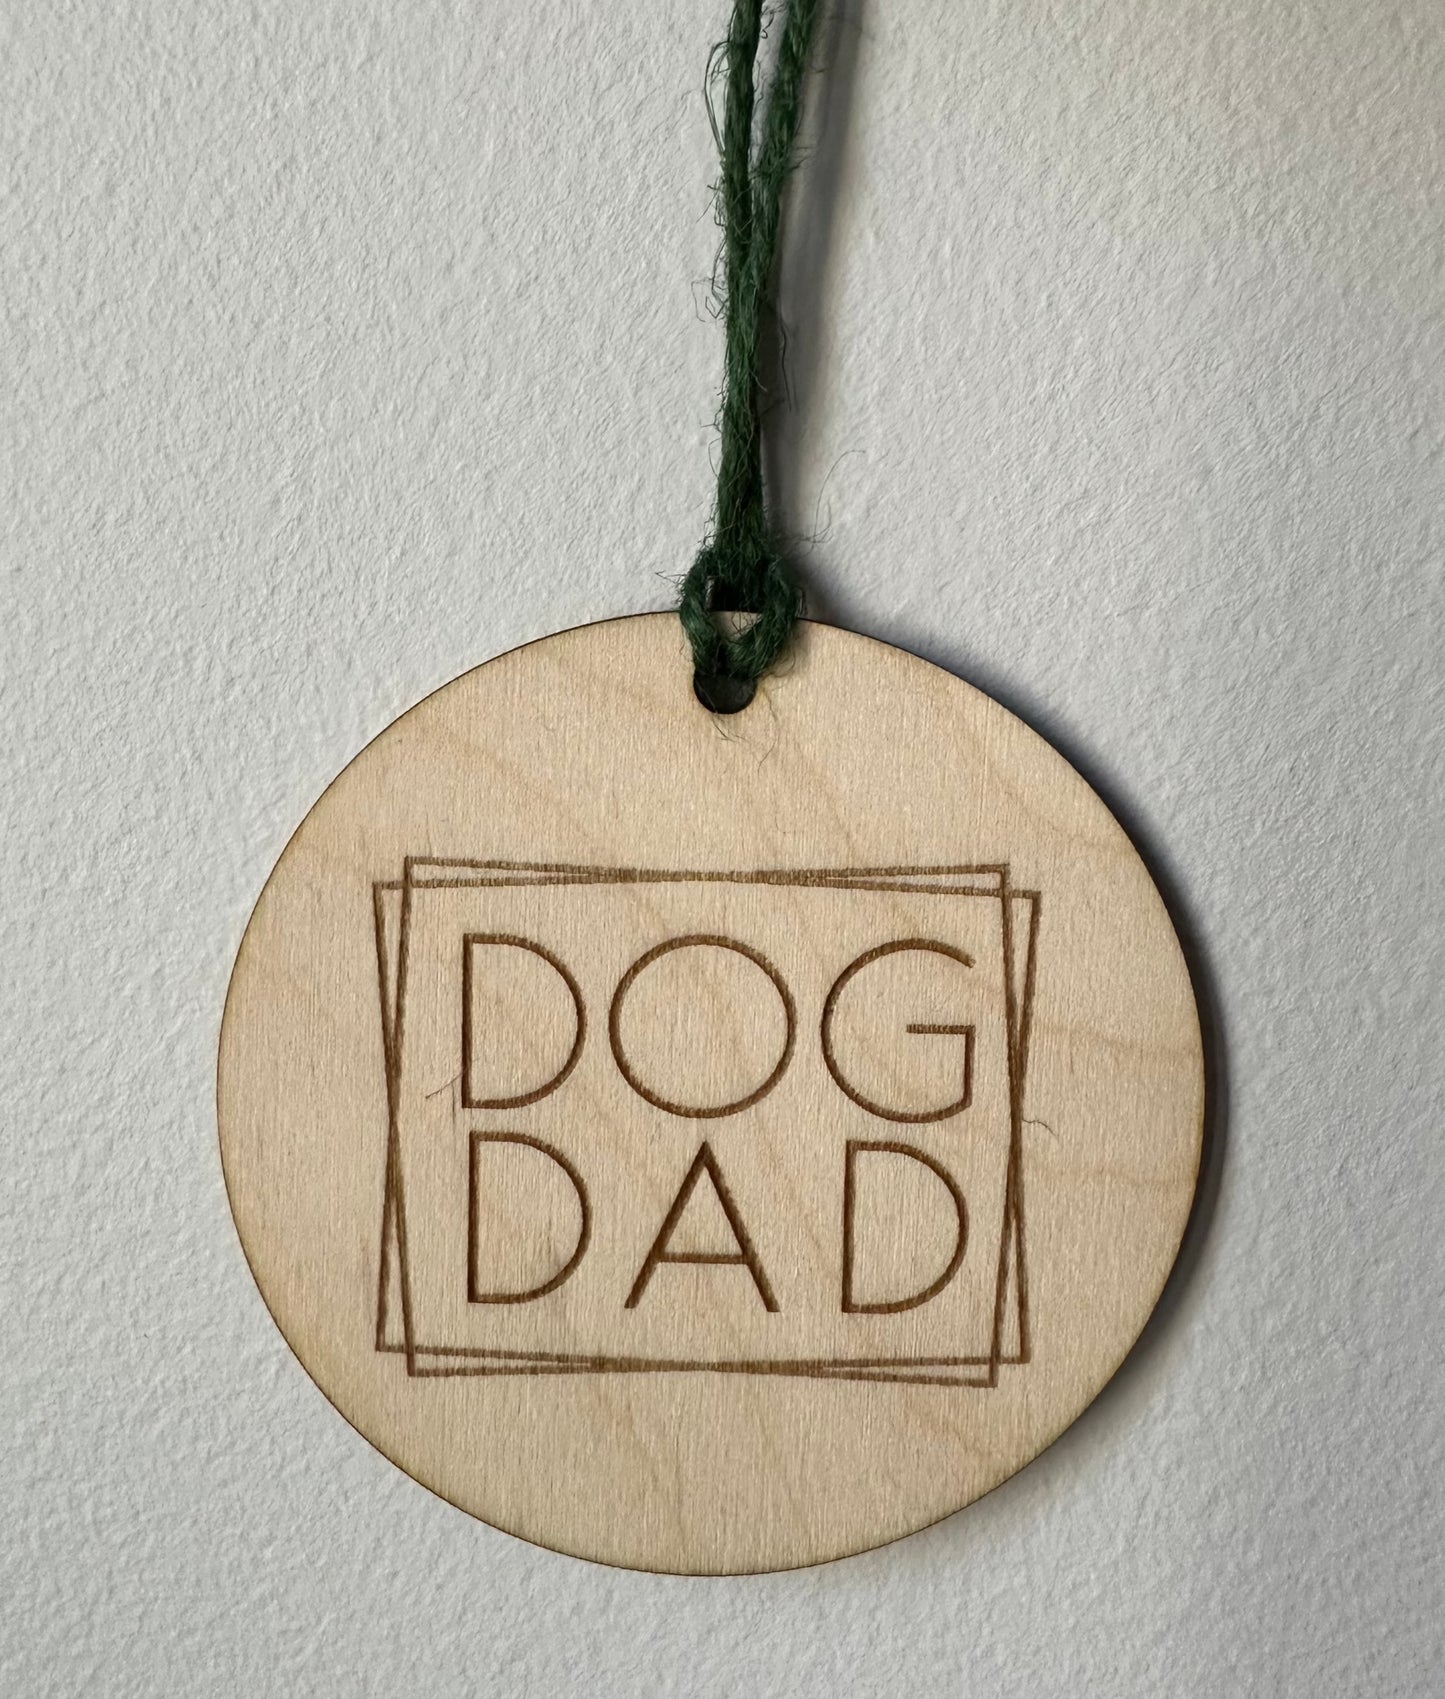 Dog Dad Ornament